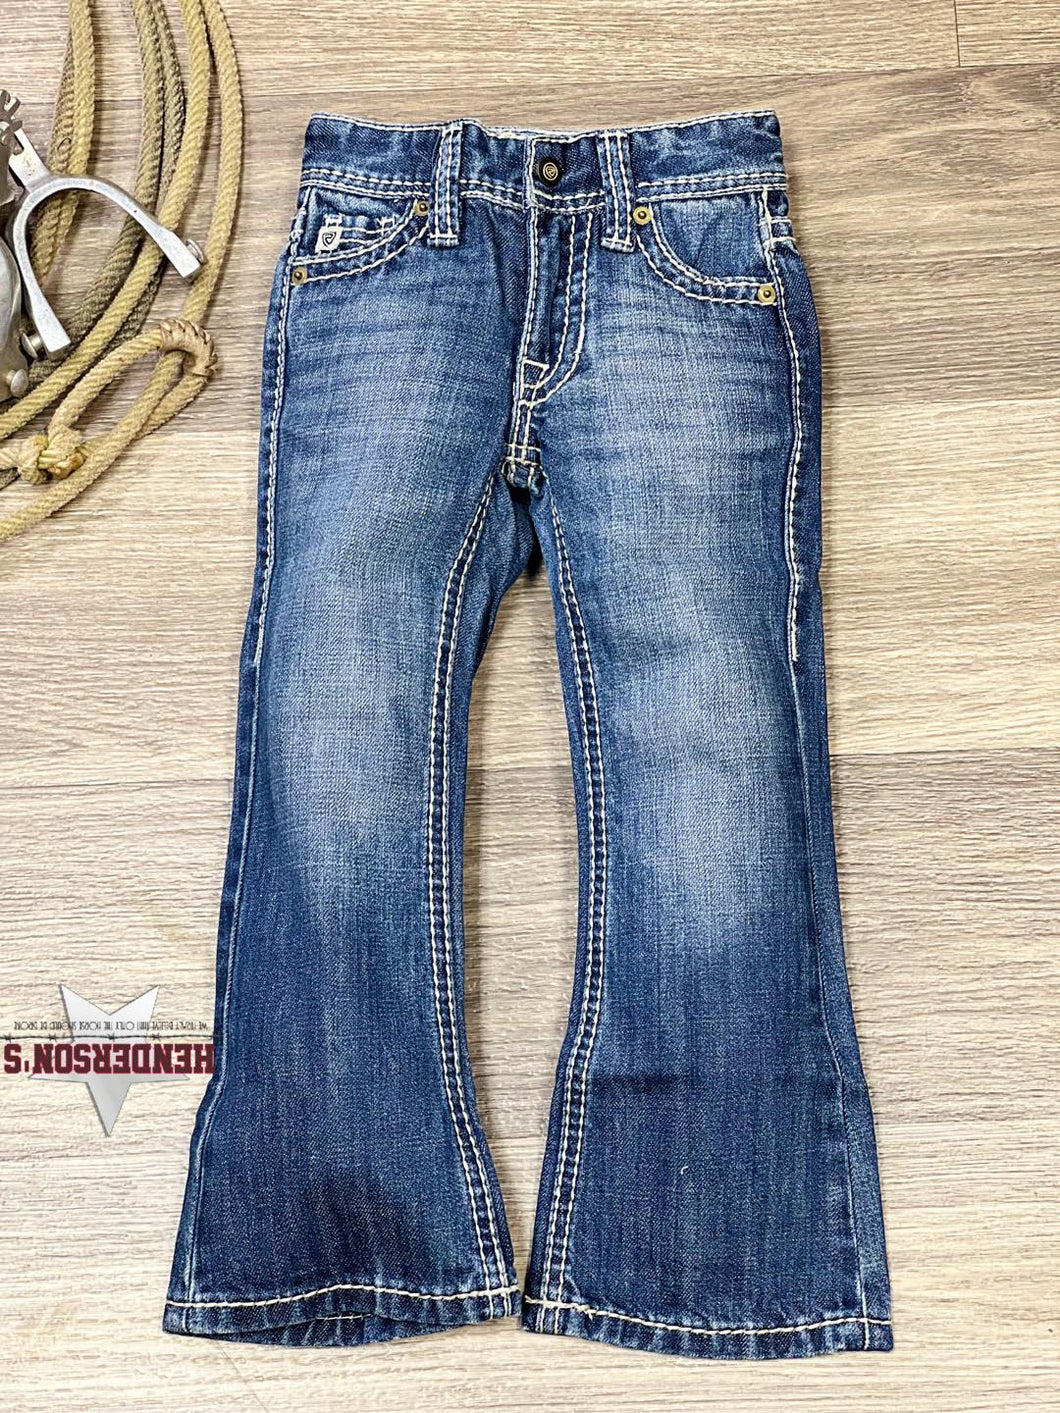 Boy's BB Gun Regular Jeans ~ Rope Stitch Pocket - Henderson's Western Store